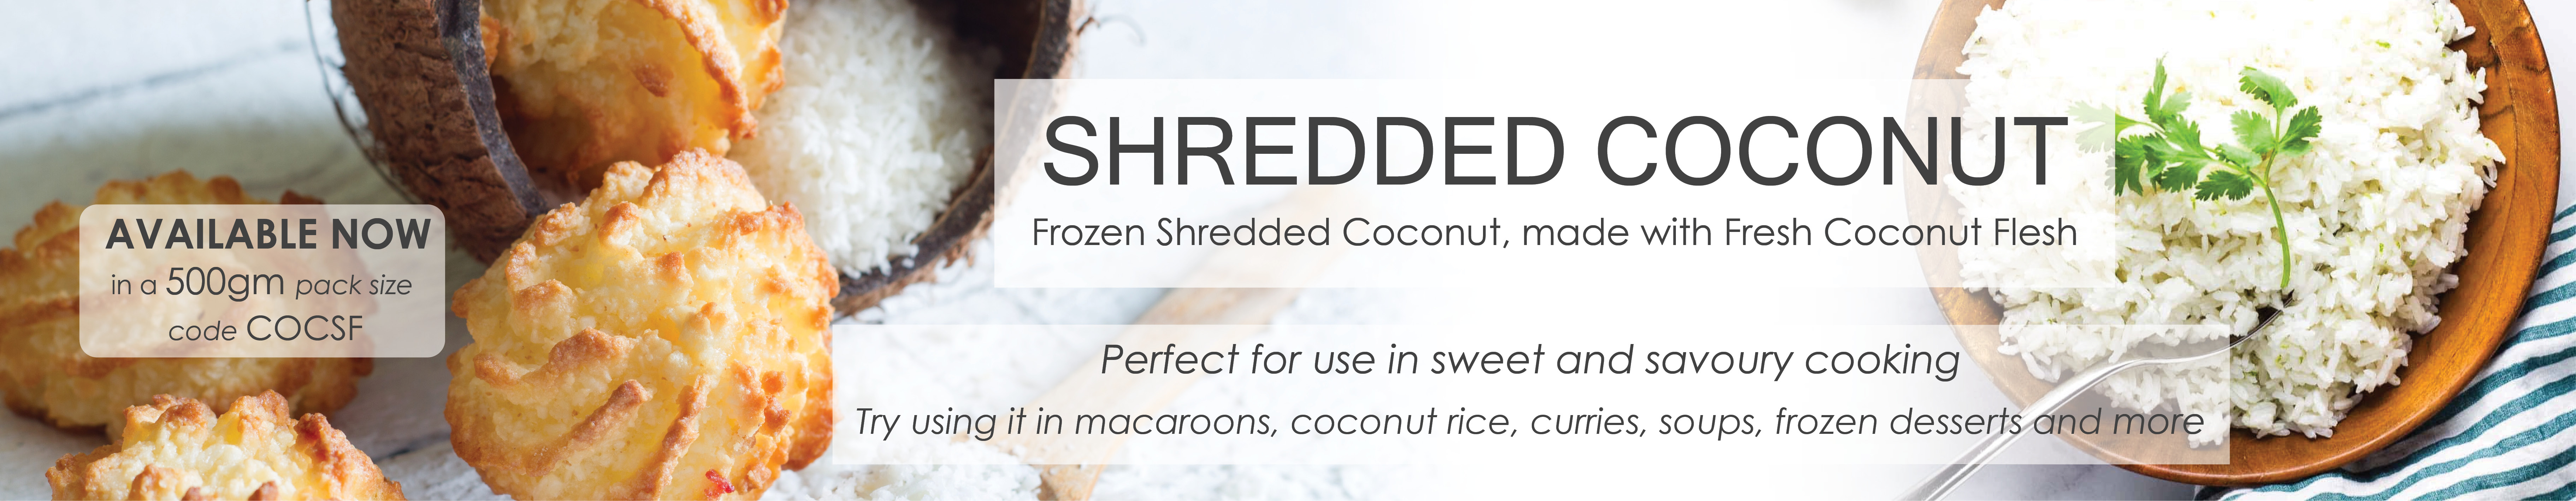 Frozen Shredded Coconut.jpg